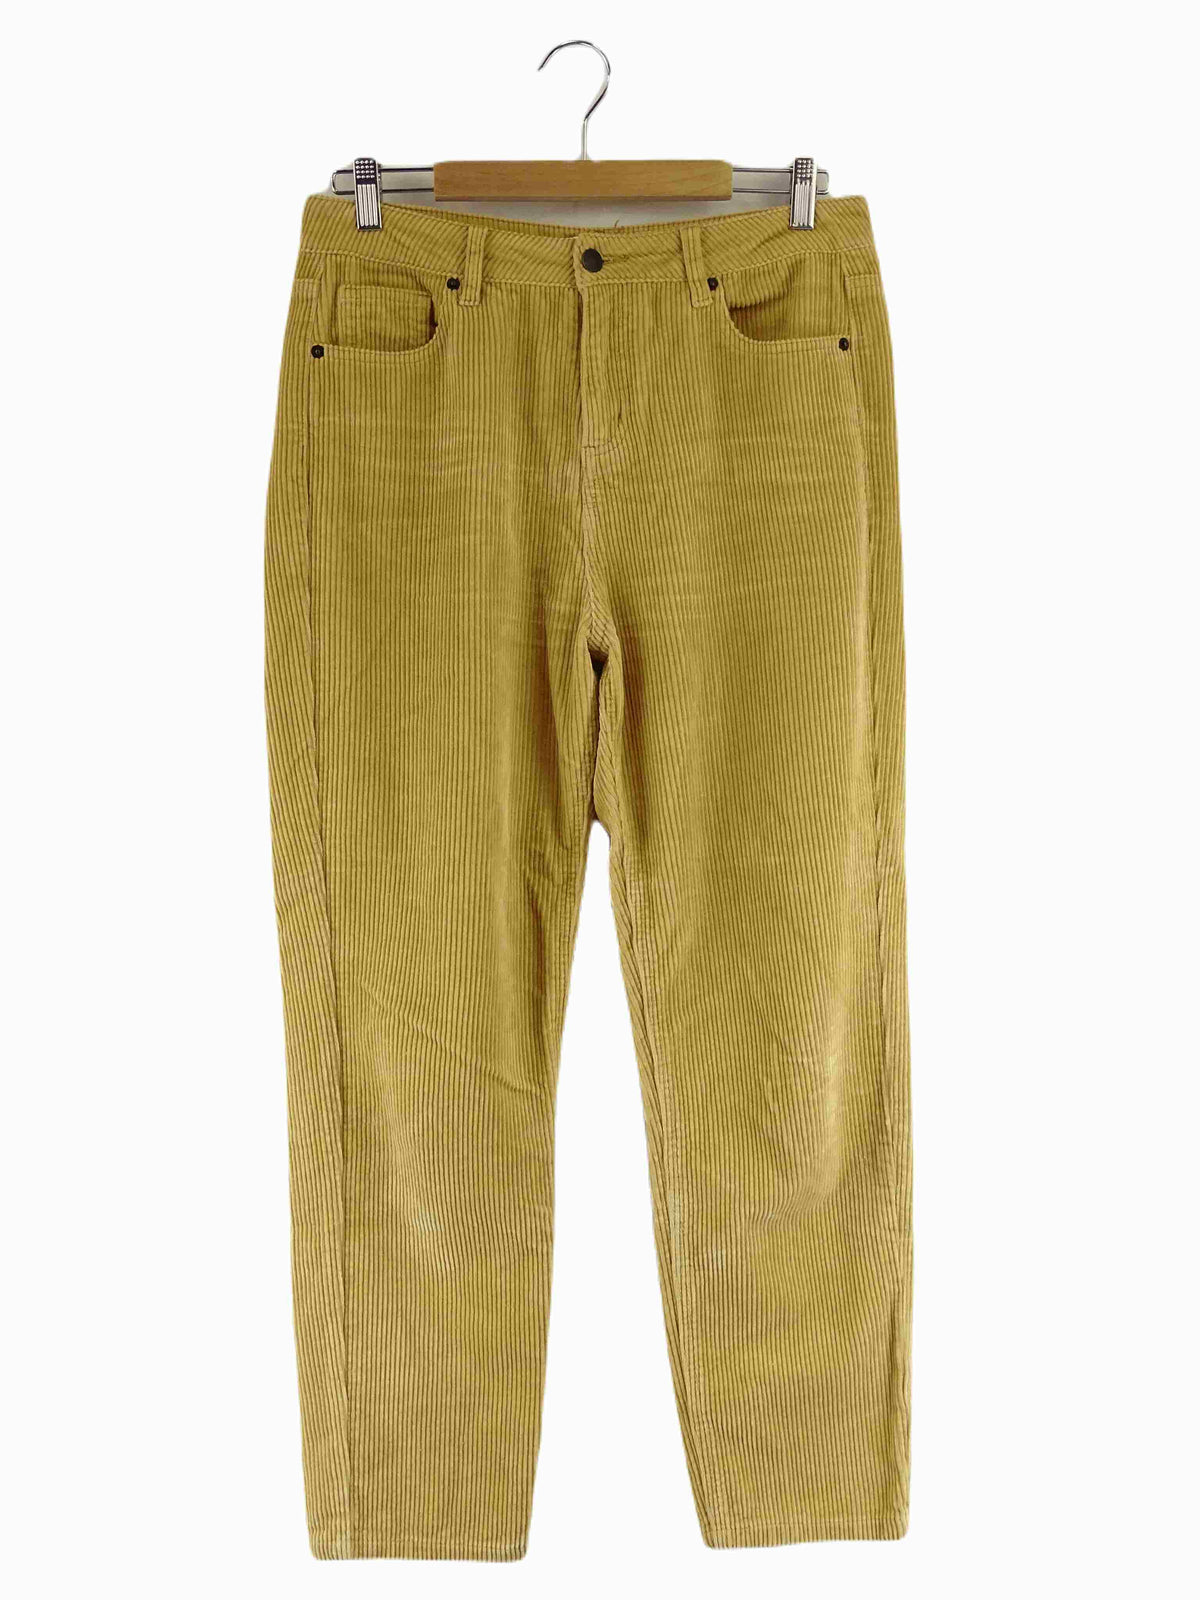 Ghanda Yellow Corduroy Pants AU 10 / 28